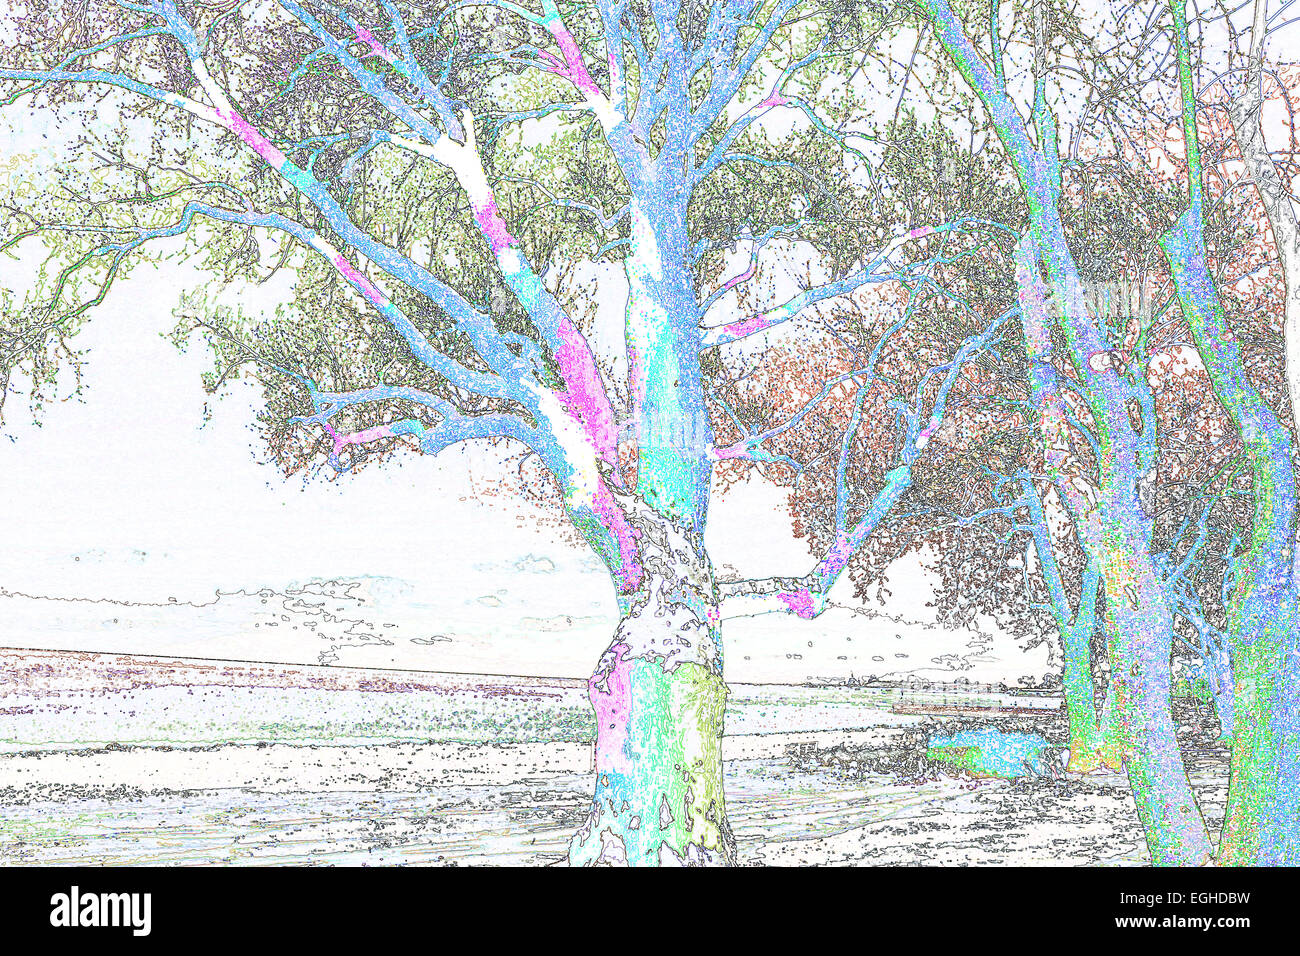 abstrakte Bäume Luftbild Farbe Bild tagsüber außen vorgestellten horizontale viele Photoshopped Baum weiße Gebäude Außenfarbe Stockfoto